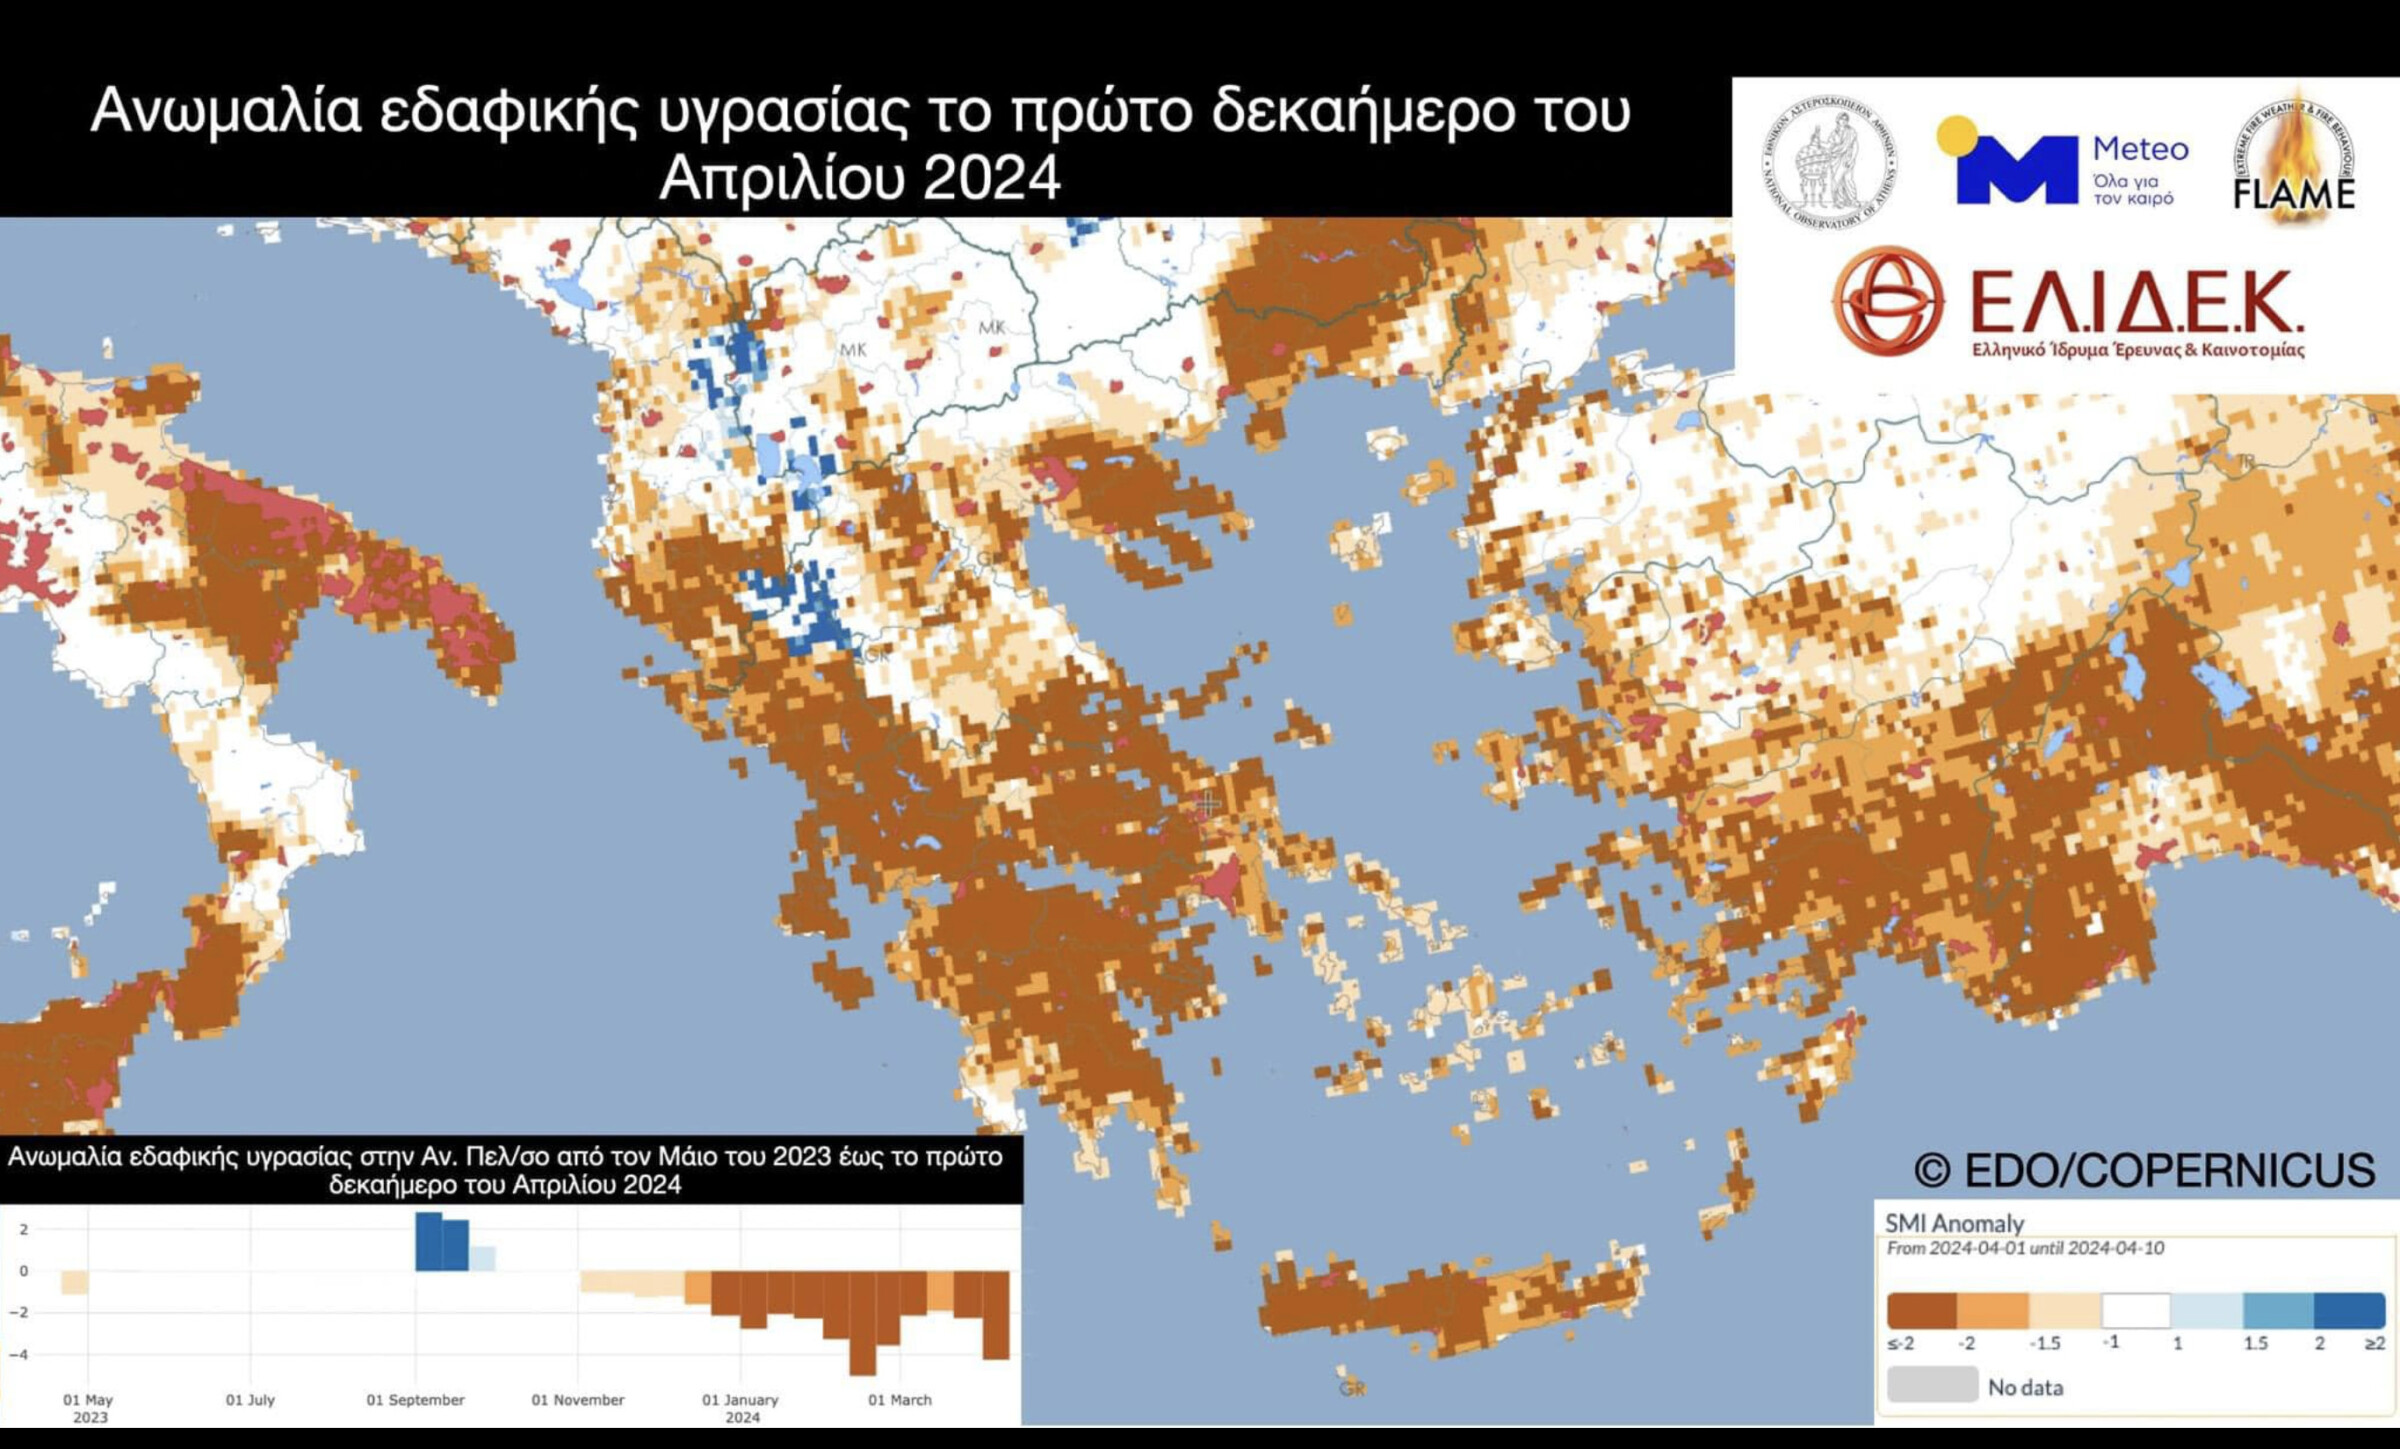 Ο χάρτης είναι κεντραρισμένος στην Ελλάδα. Η ΚΡήτη, η Πελοπόννησος, η Στερεά, η Ήπειρος και ο Έβρος παρουσιάζονται ώς σκούρες καφέ, χρωματισμός που υποδεικνύει τις μη φυσιολογικες τιμές της εδαφικής υγρασίας. 